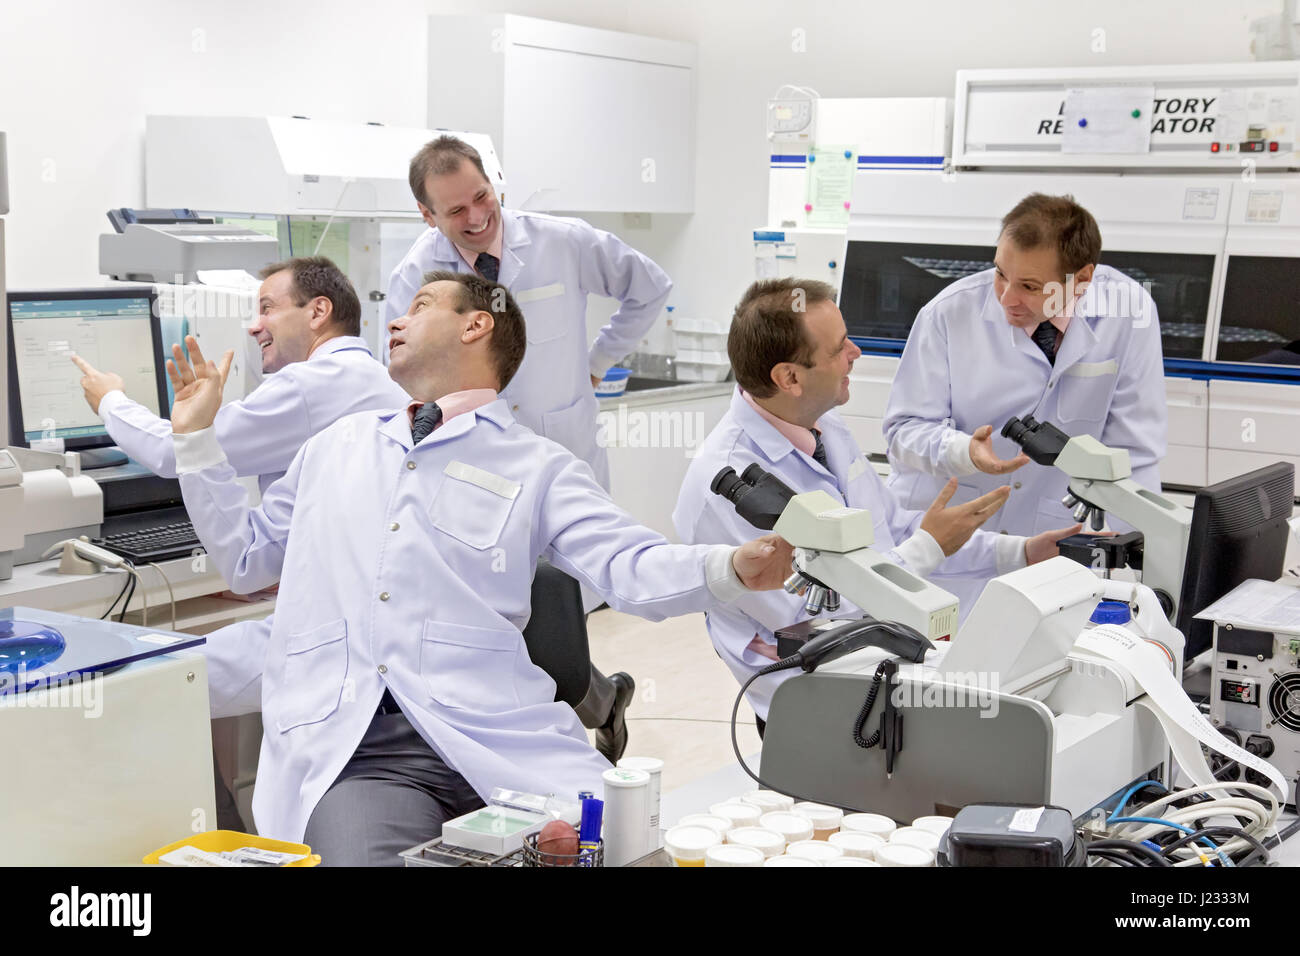 Un groupe de médecins identiques s'amuser dans le laboratoire. Une équipe de chercheurs travaille par un laboratoire hospitalier. Banque D'Images